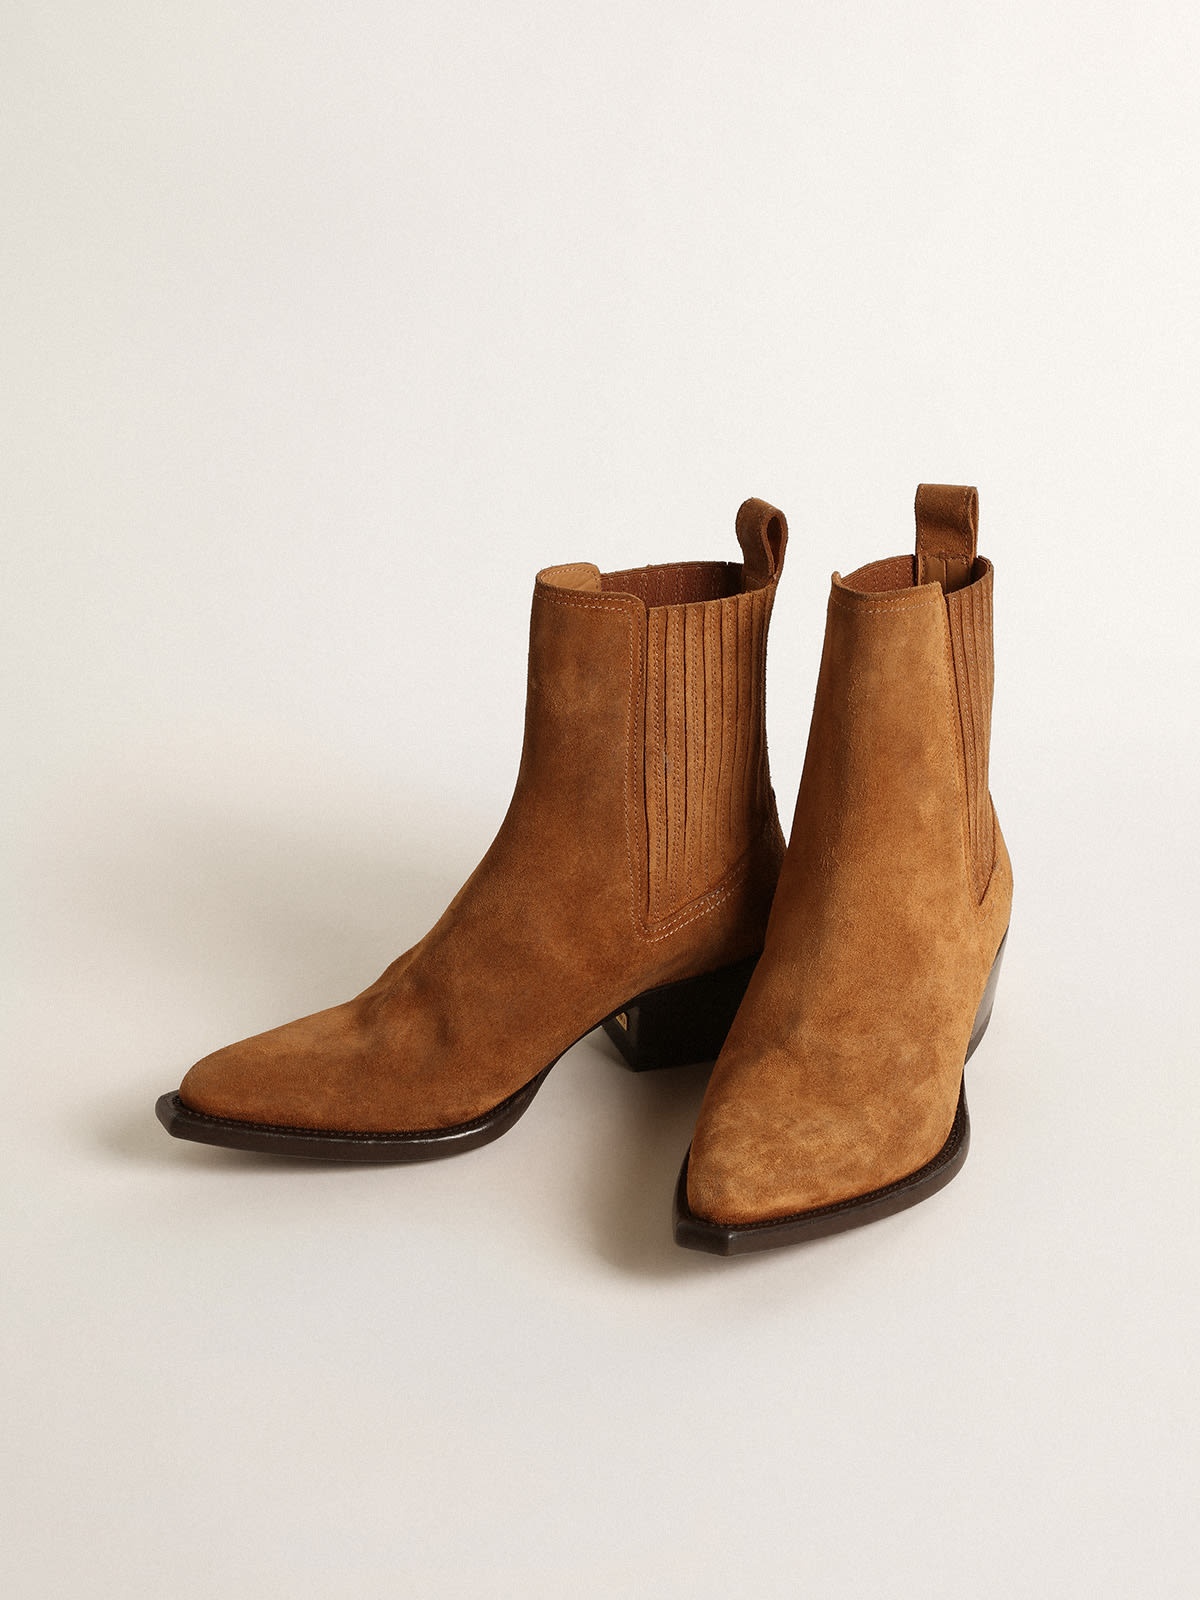 Debbie brown suede boots - 2